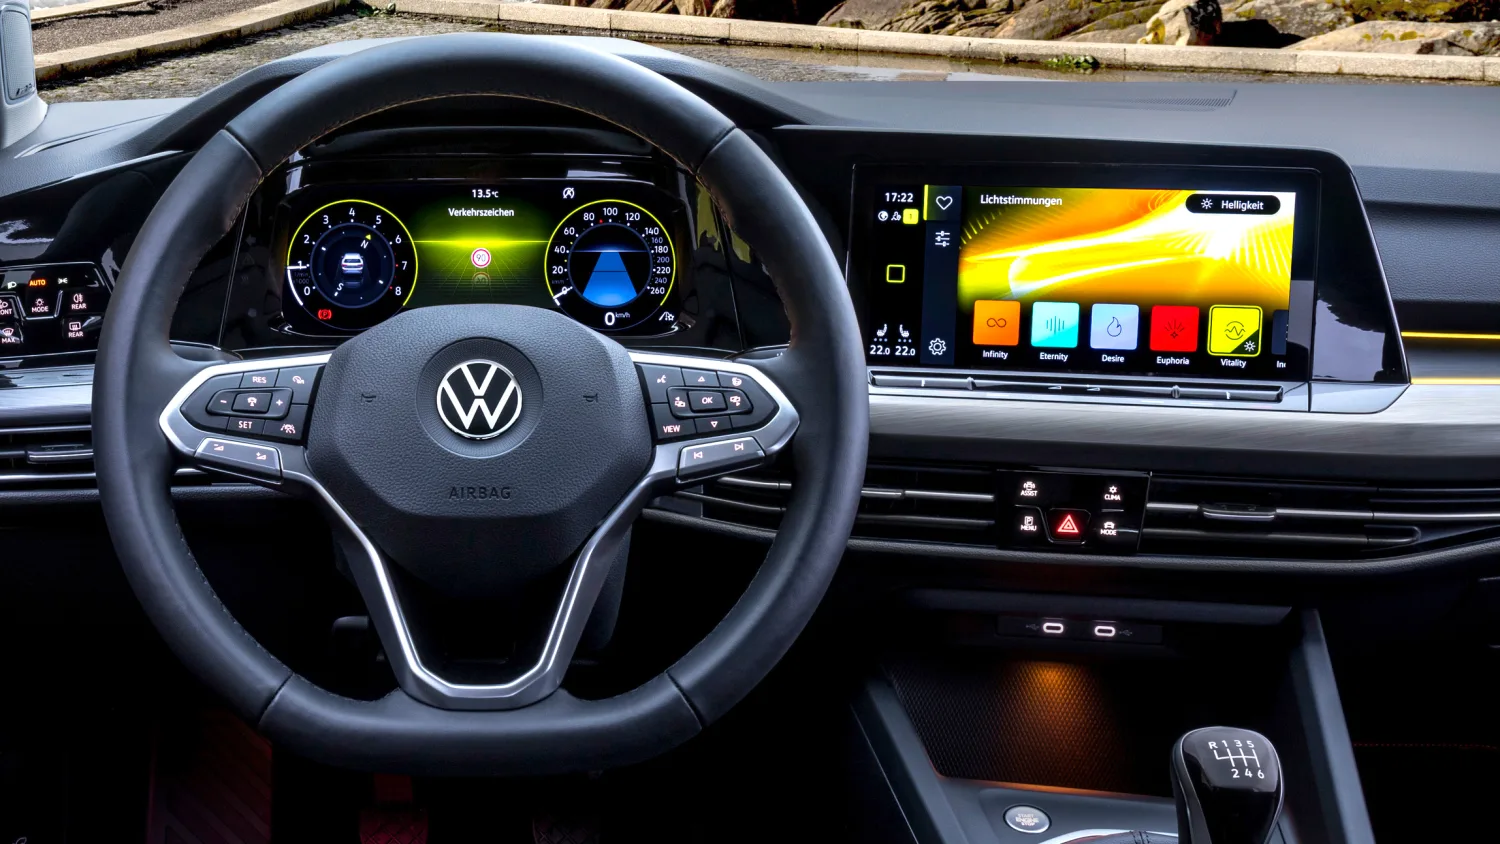 VW Golf 8 Infotainment: Schnellere Hard- und bessere Software starten  Anfang 2022 - ComputerBase